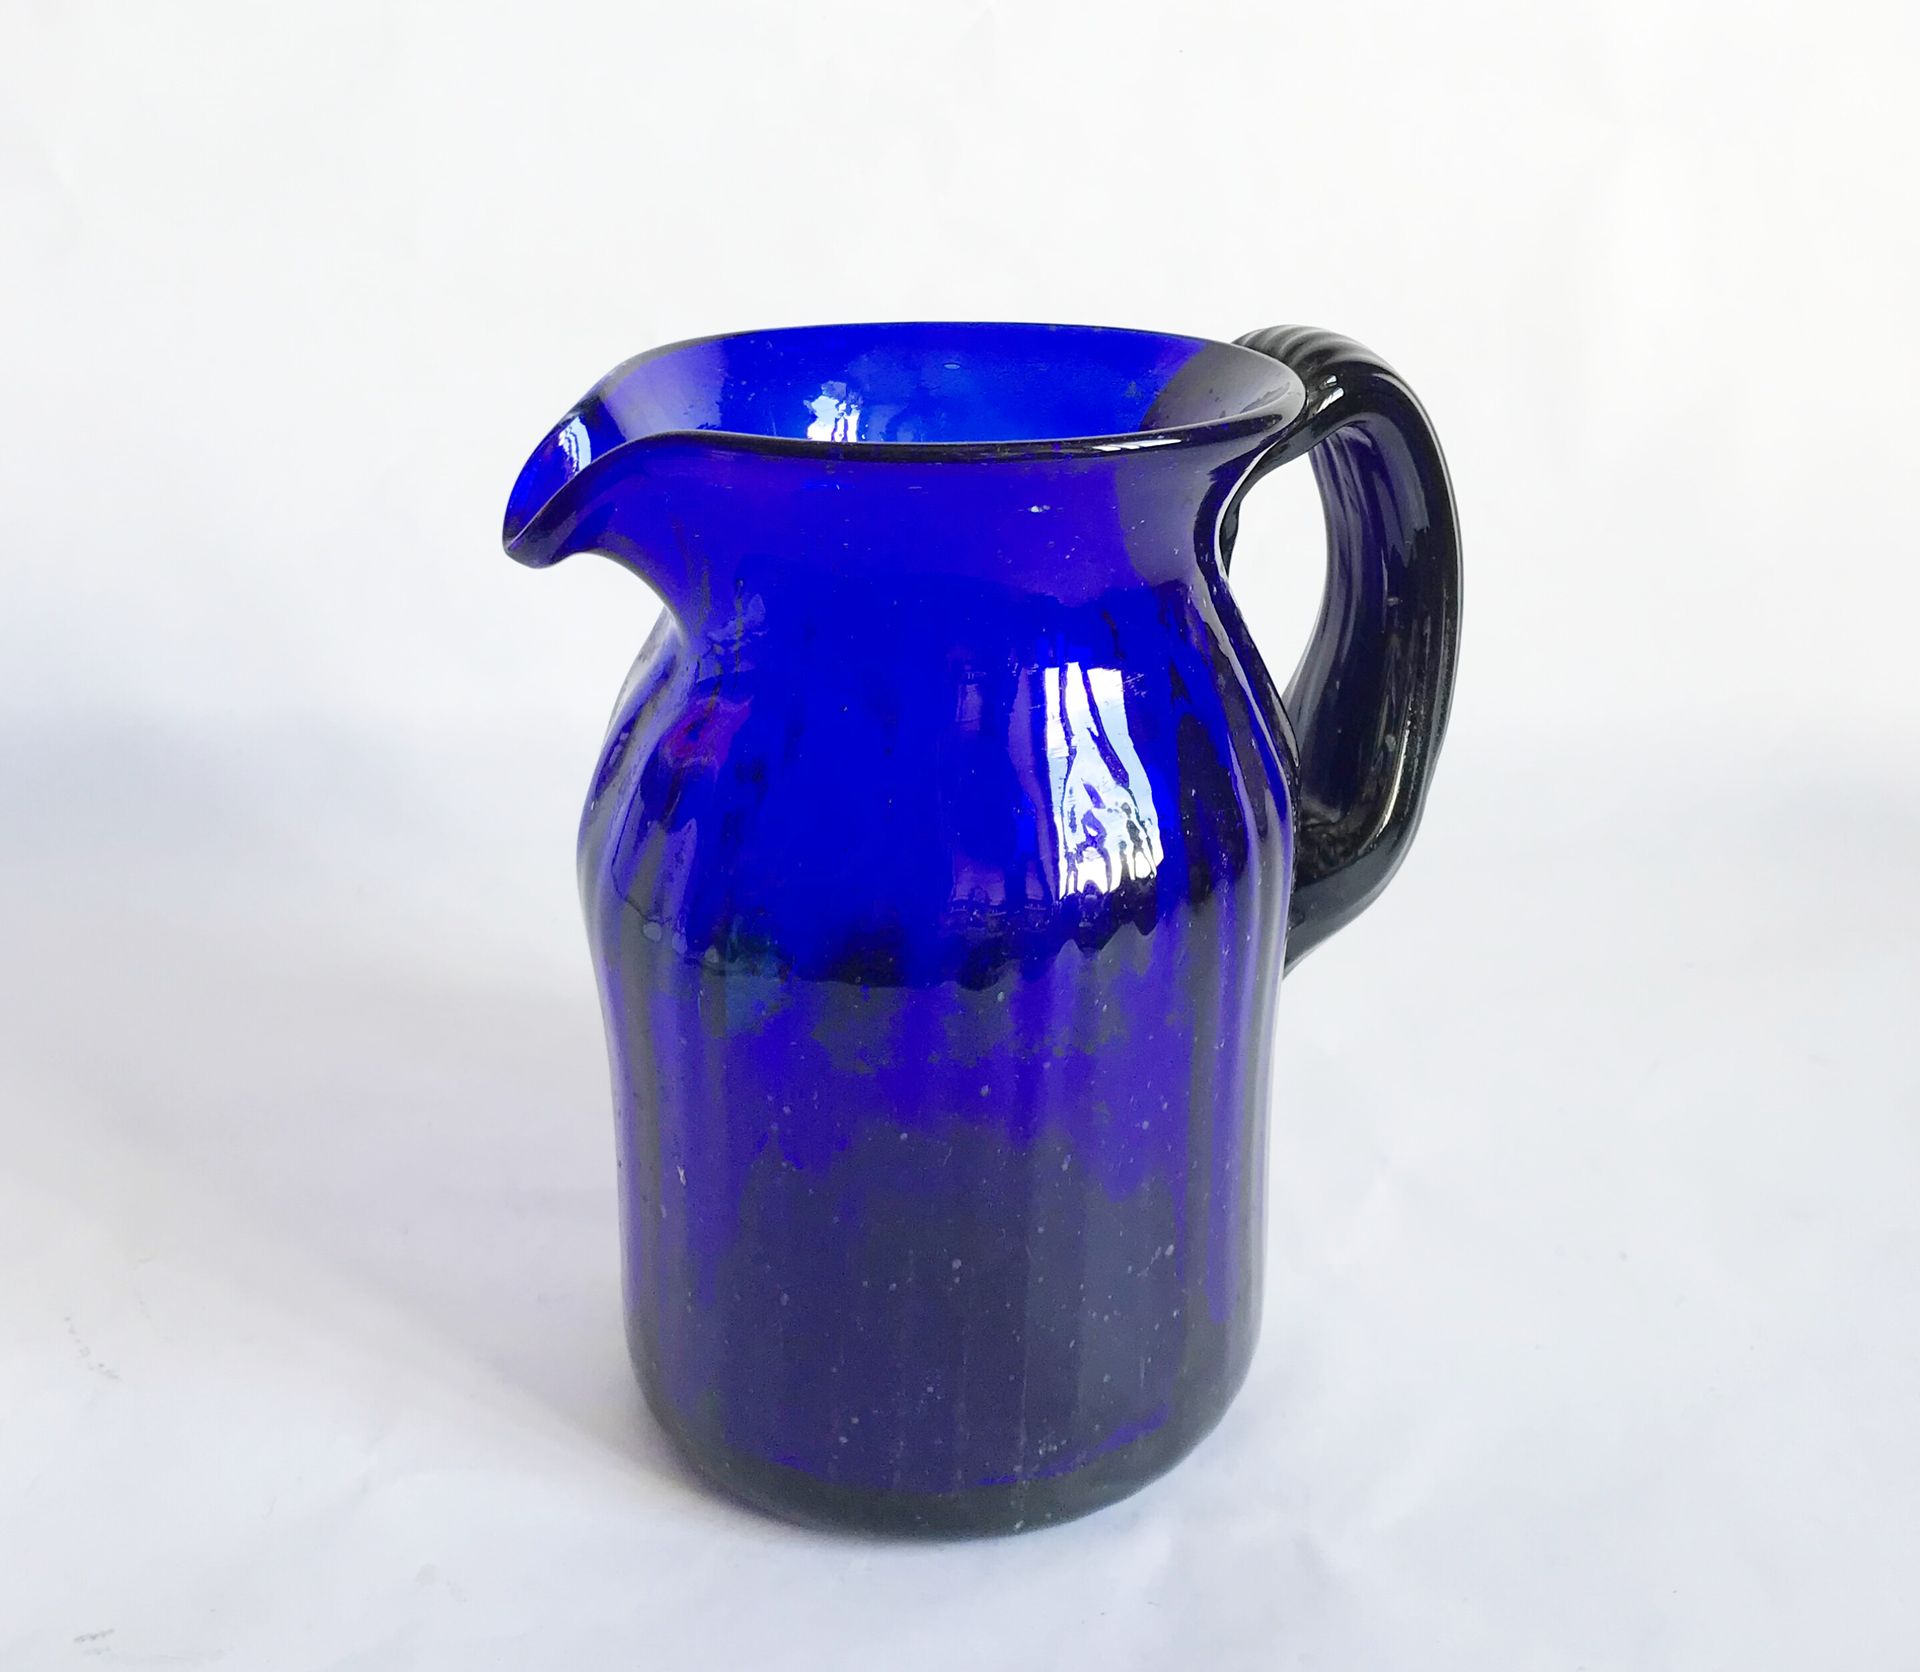 Null Krug aus mundgeblasenem blauem Glas mit seitlichem Henkel.

H. : 20 cm